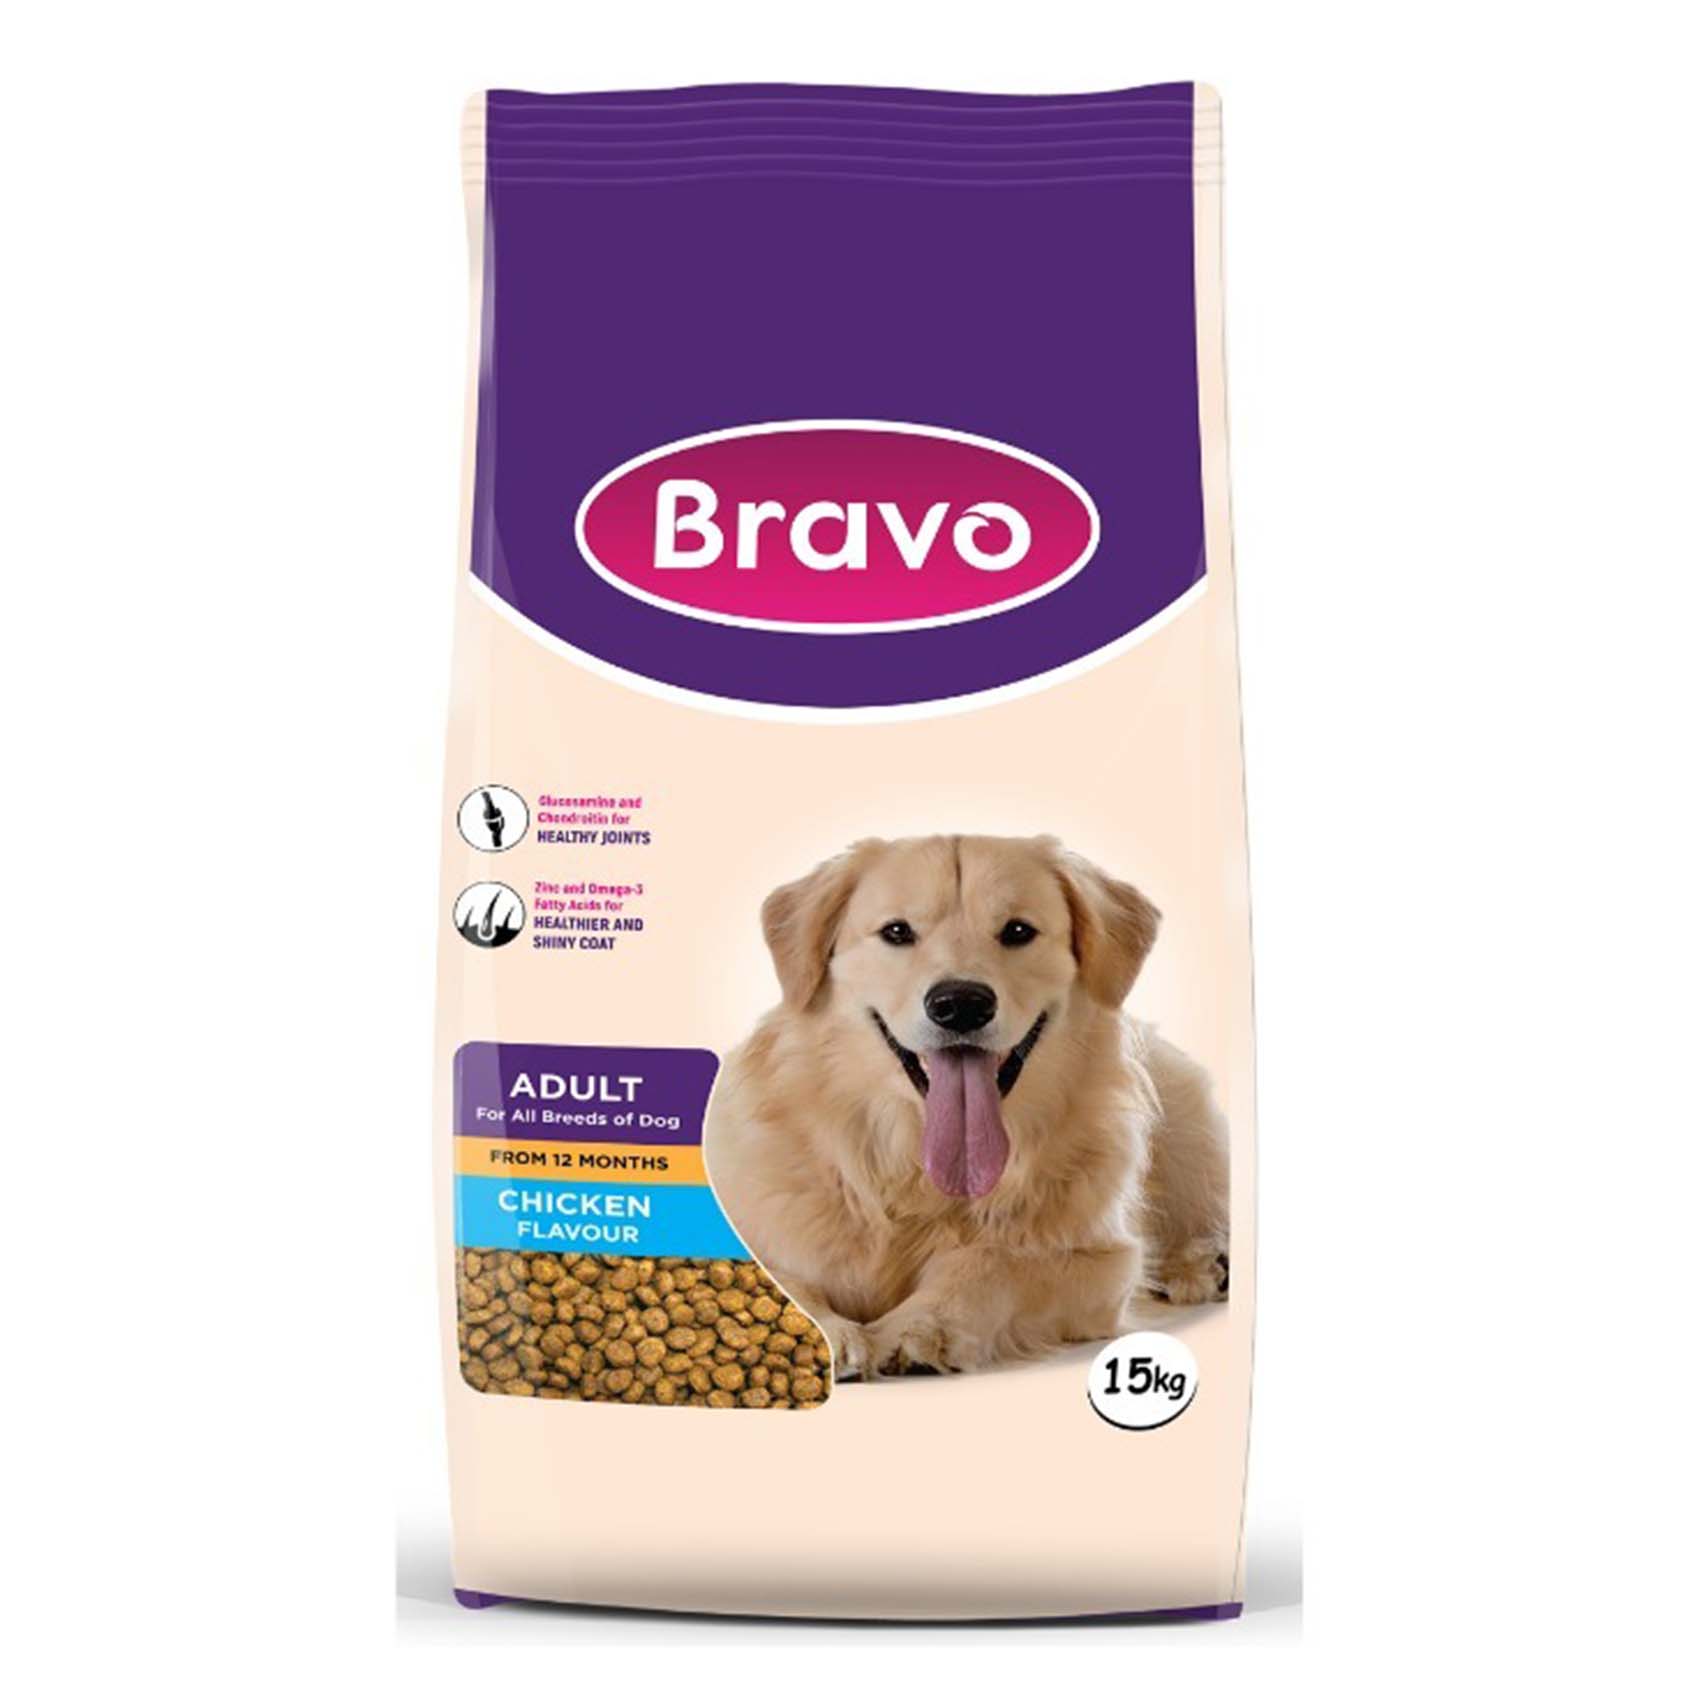 Bravo Chicken Flavour Adult Dog Food 15Kg